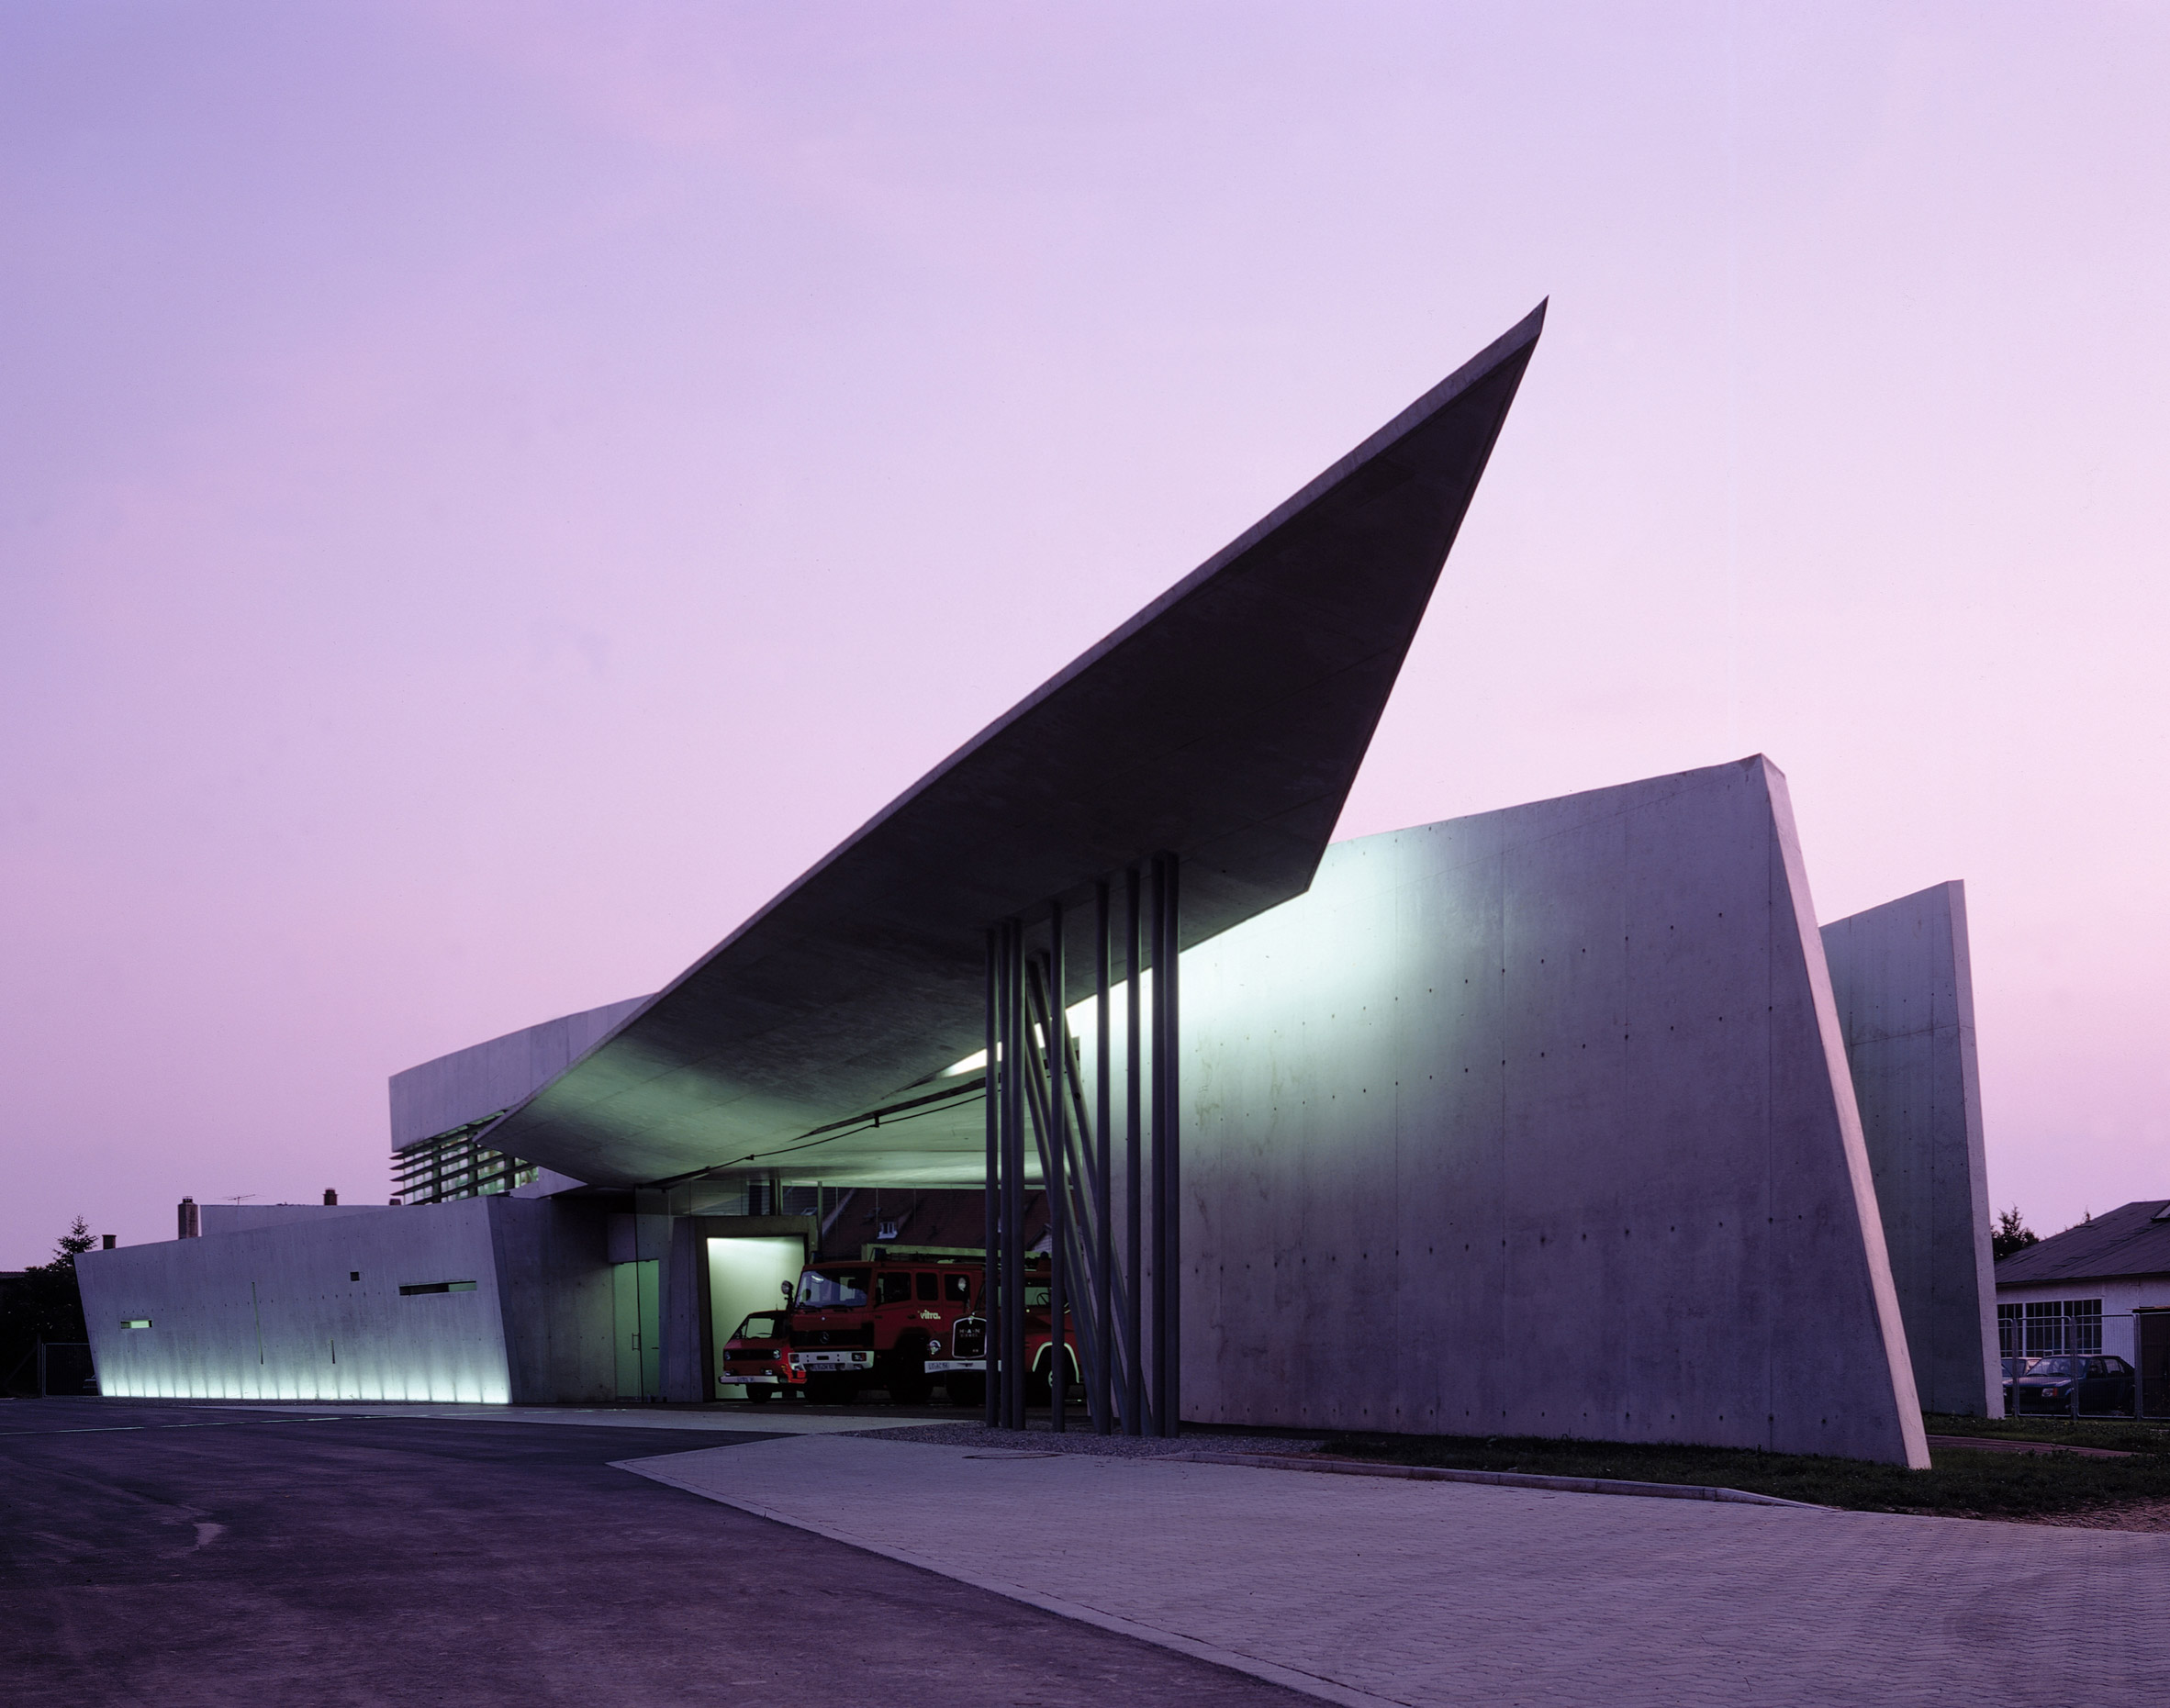 Exterior of Vitra Fire Station by Zaha Hadid Architects